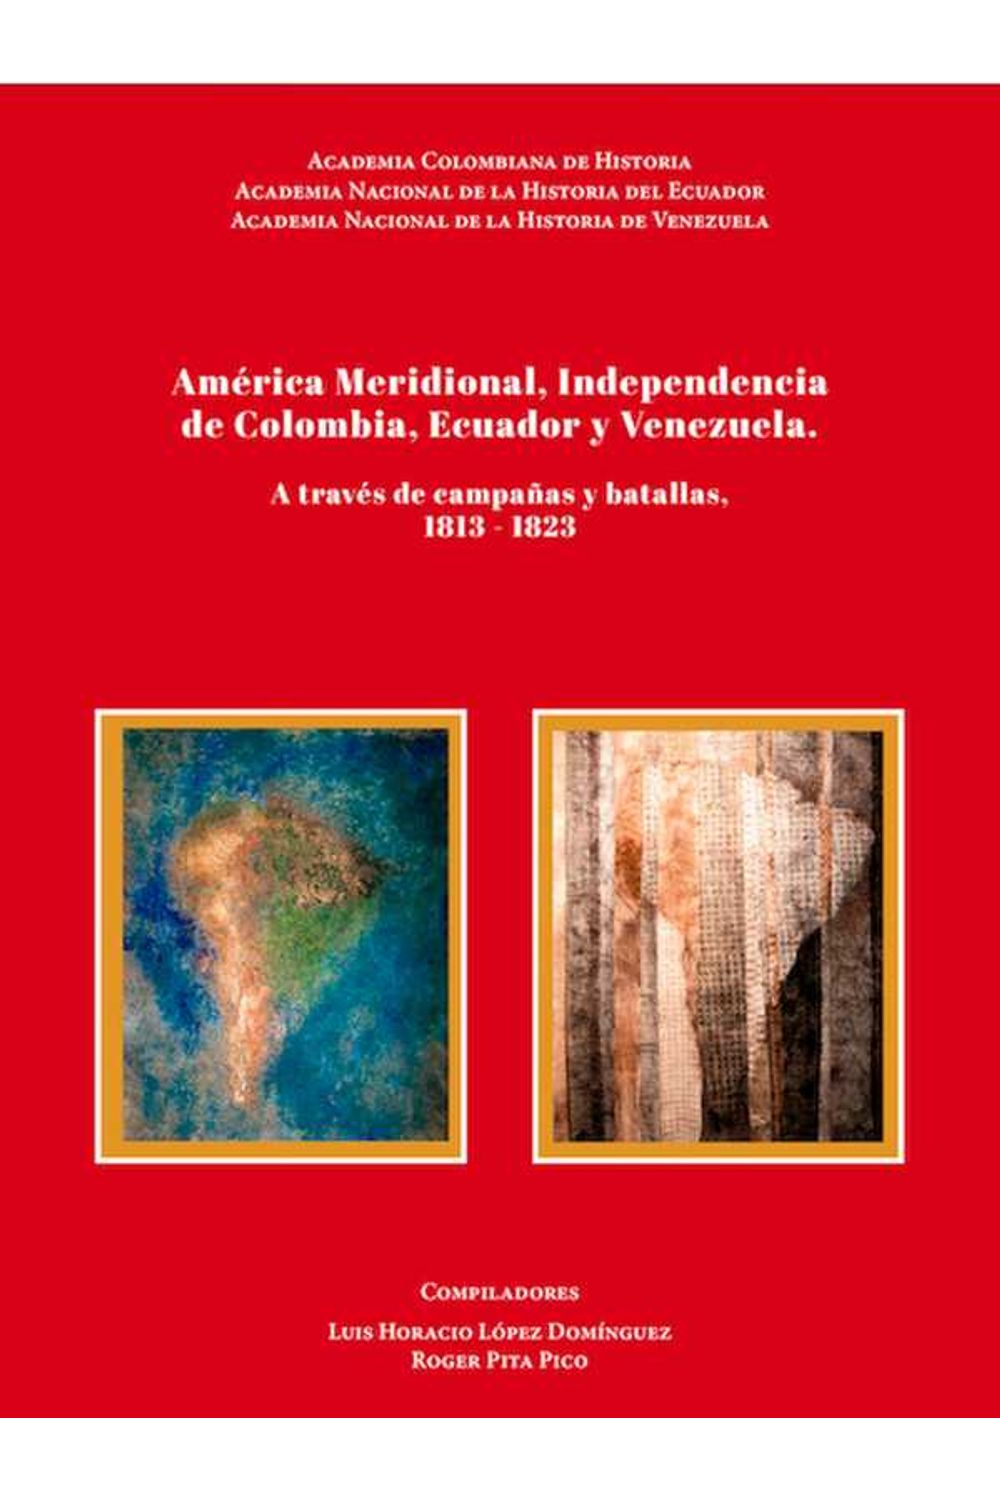 bw-ameacuterica-meridional-independencia-de-colombia-ecuador-y-venezuela-academia-colombiana-de-historia-9789585154193